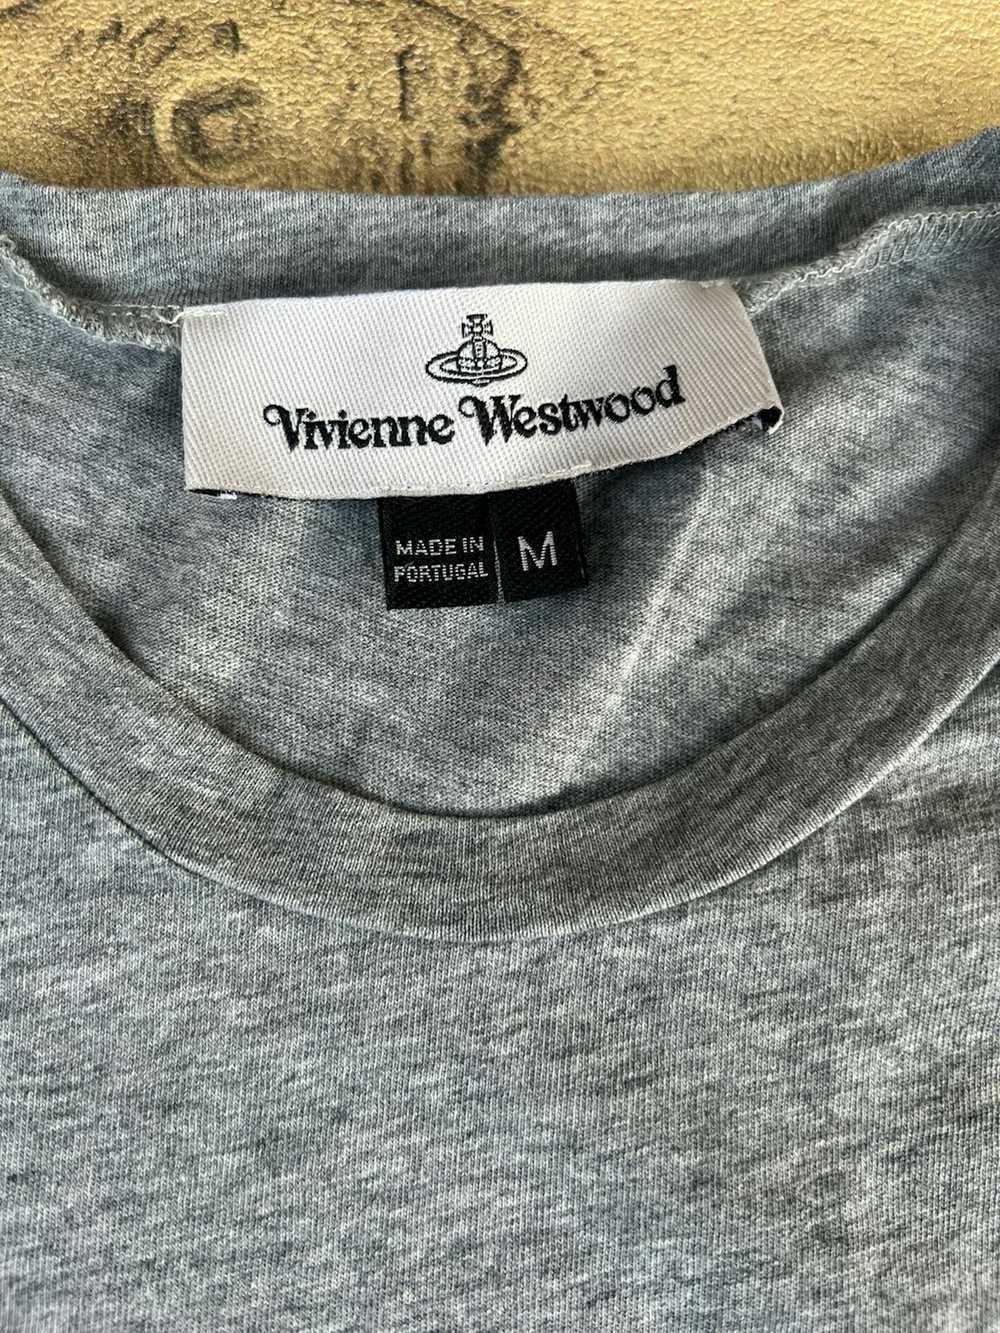 Vivienne Westwood Vivienne westwood tshirt - image 3